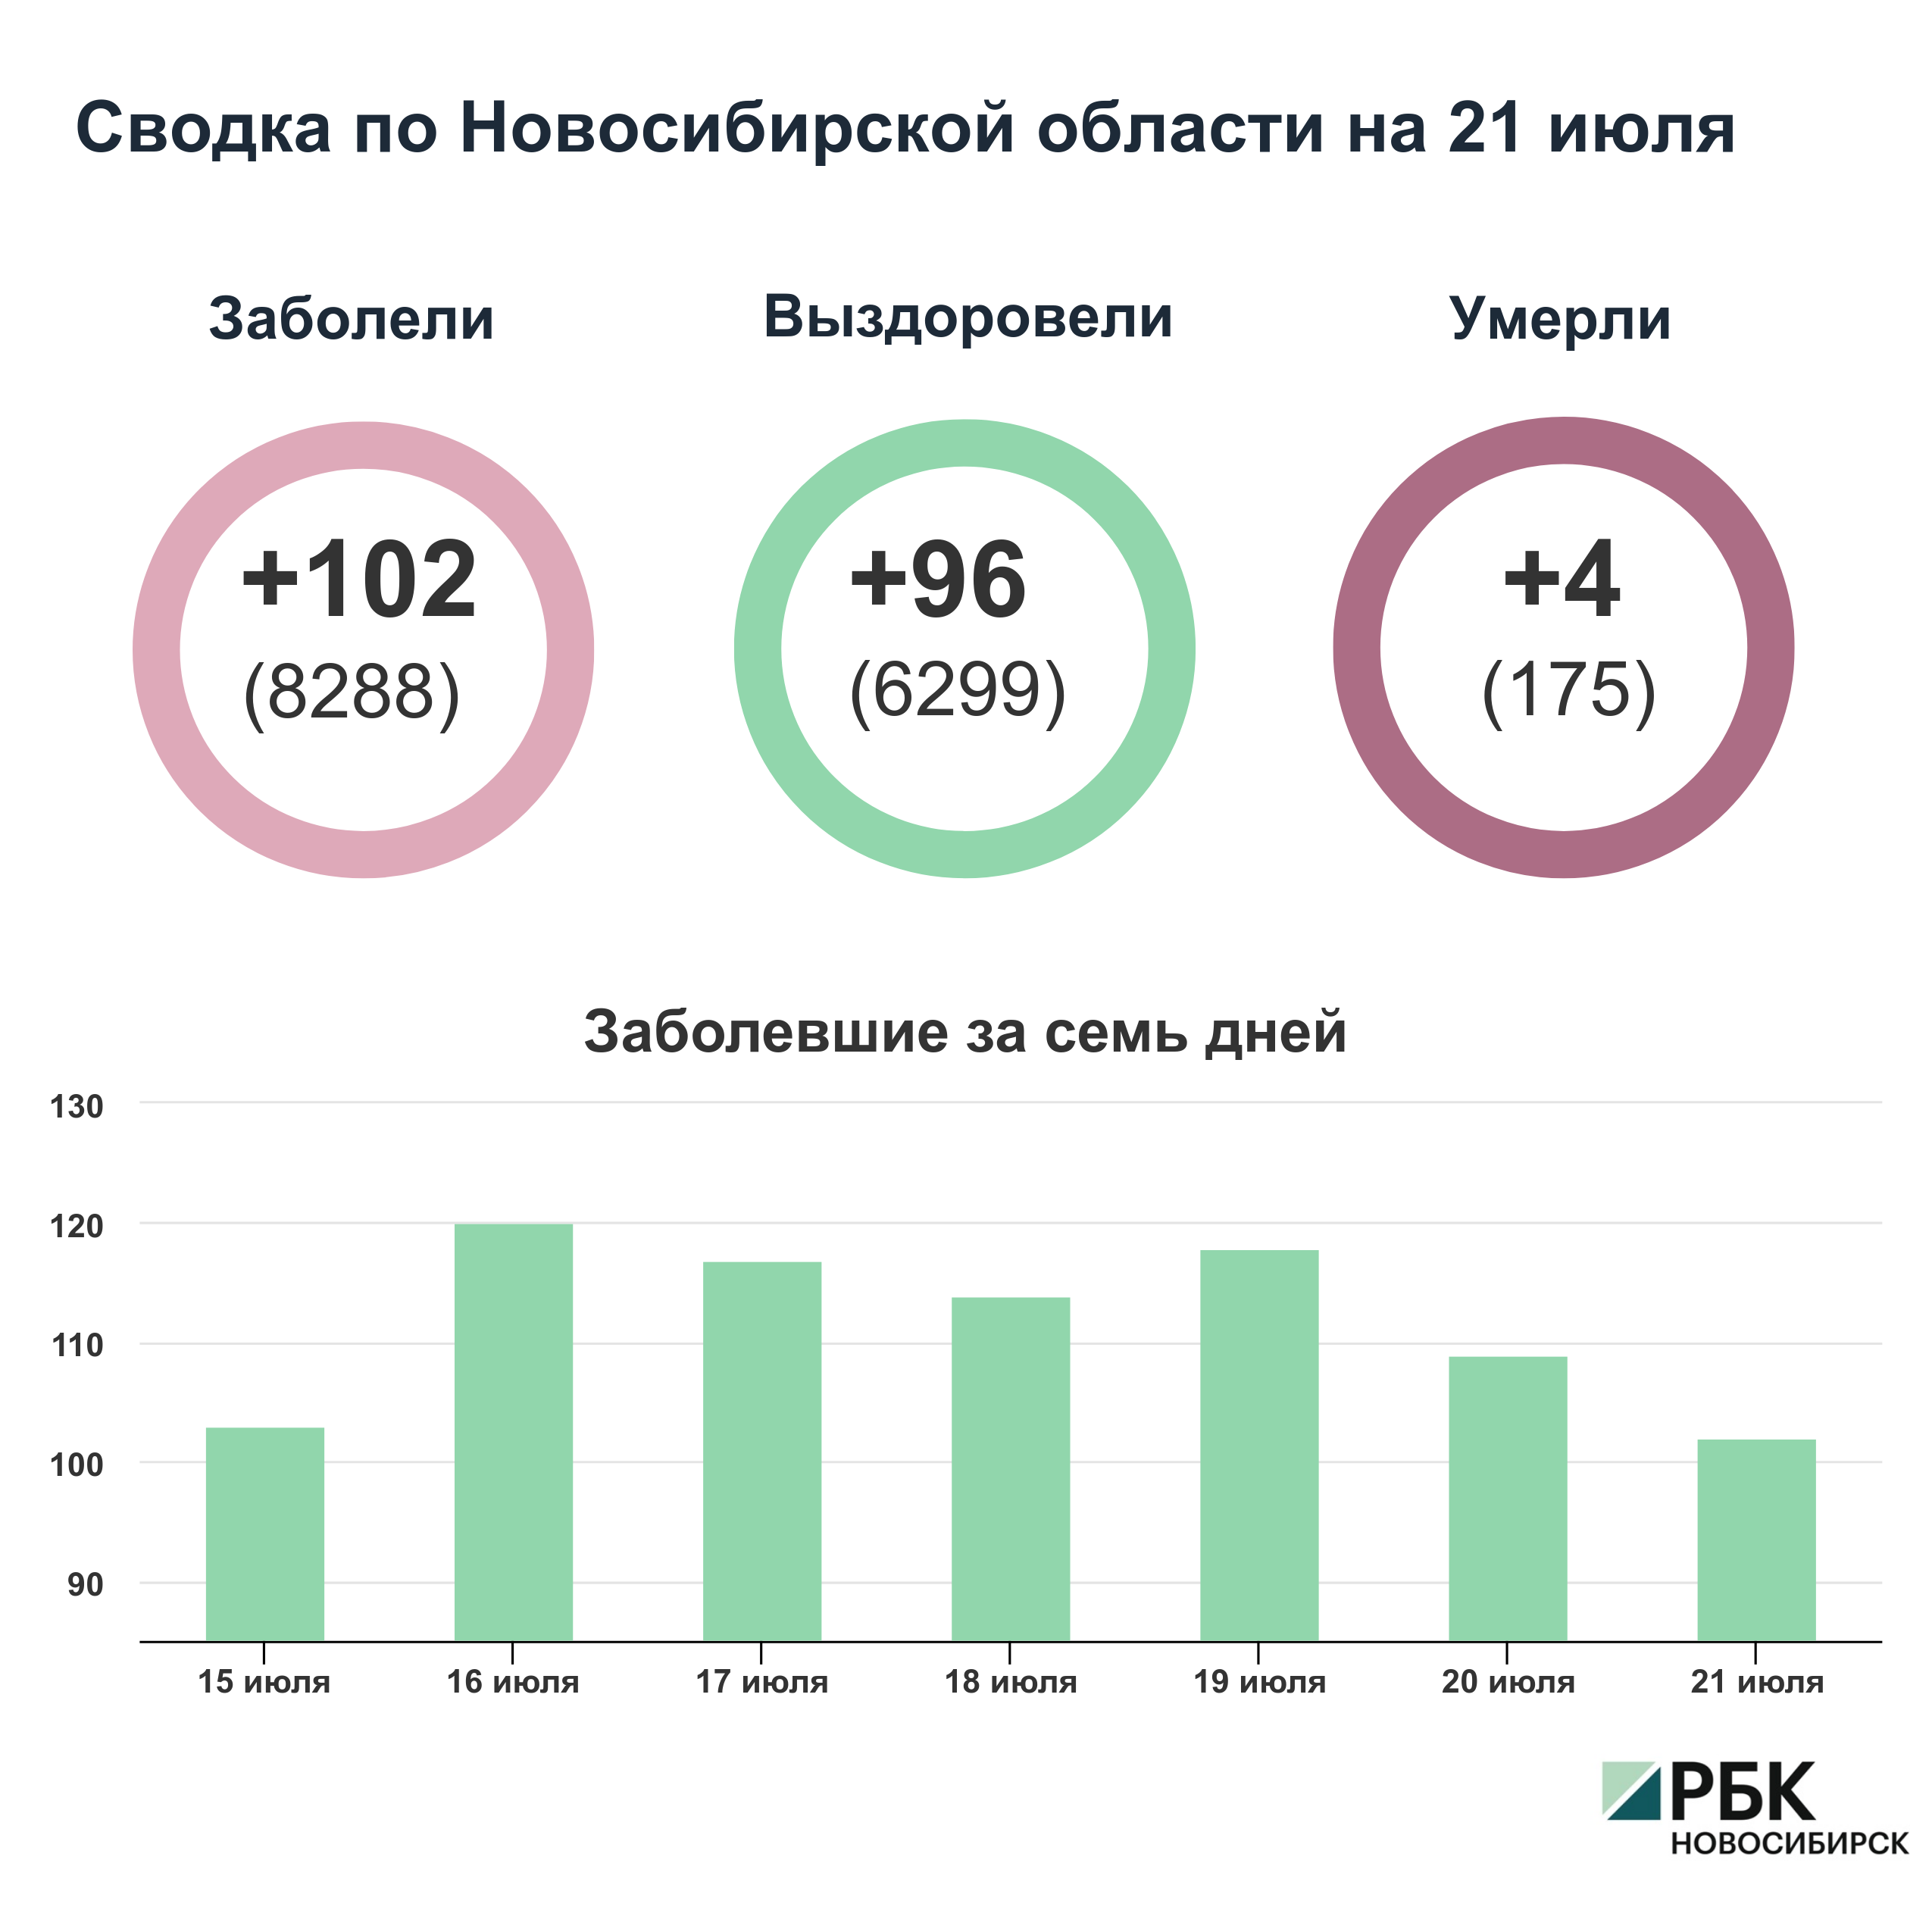 Коронавирус в Новосибирске: сводка на 21 июля